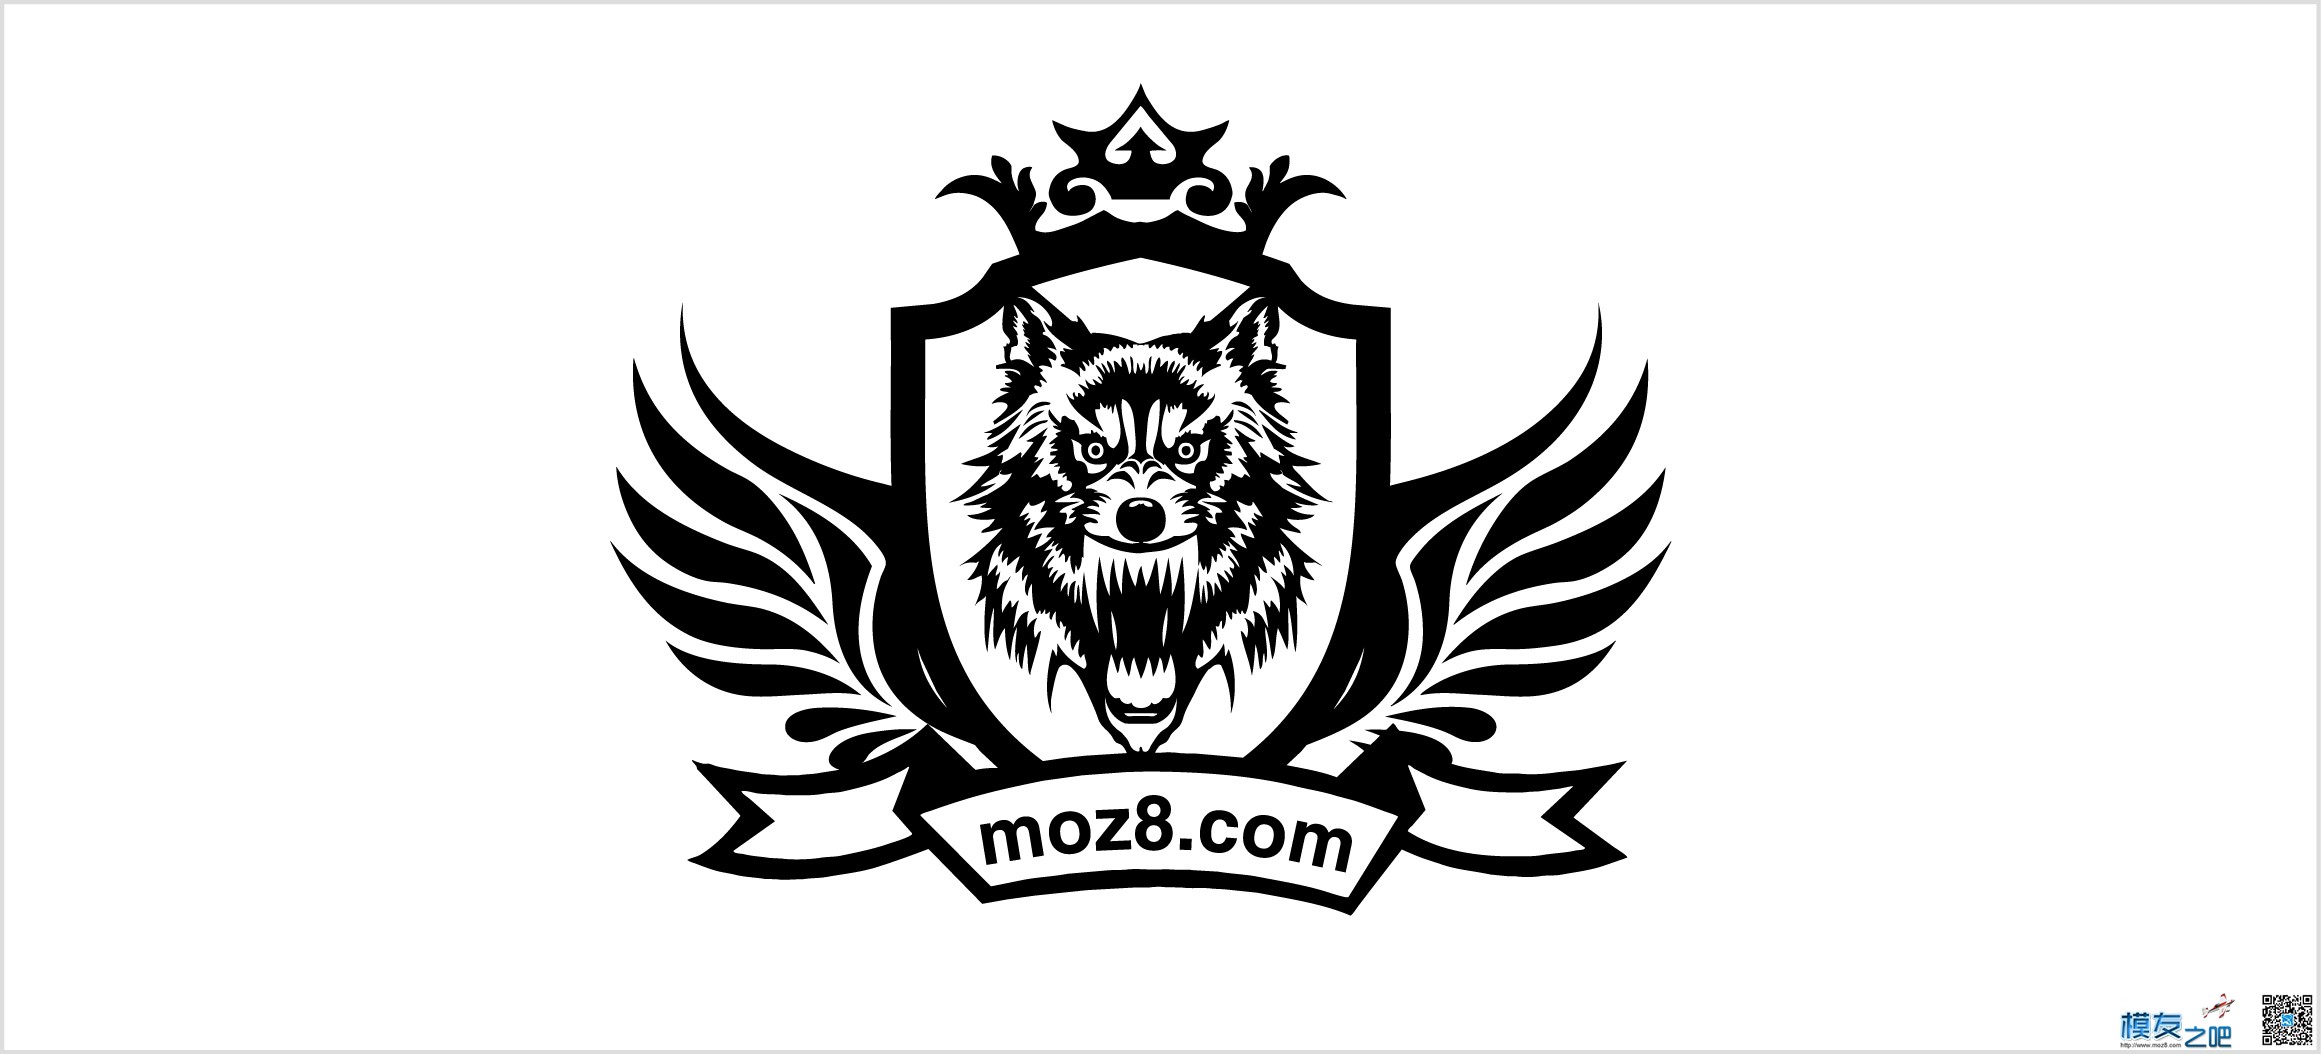 飞天狼的新的logo 茅台的logo,飞天logo 作者:飞天狼 1989 